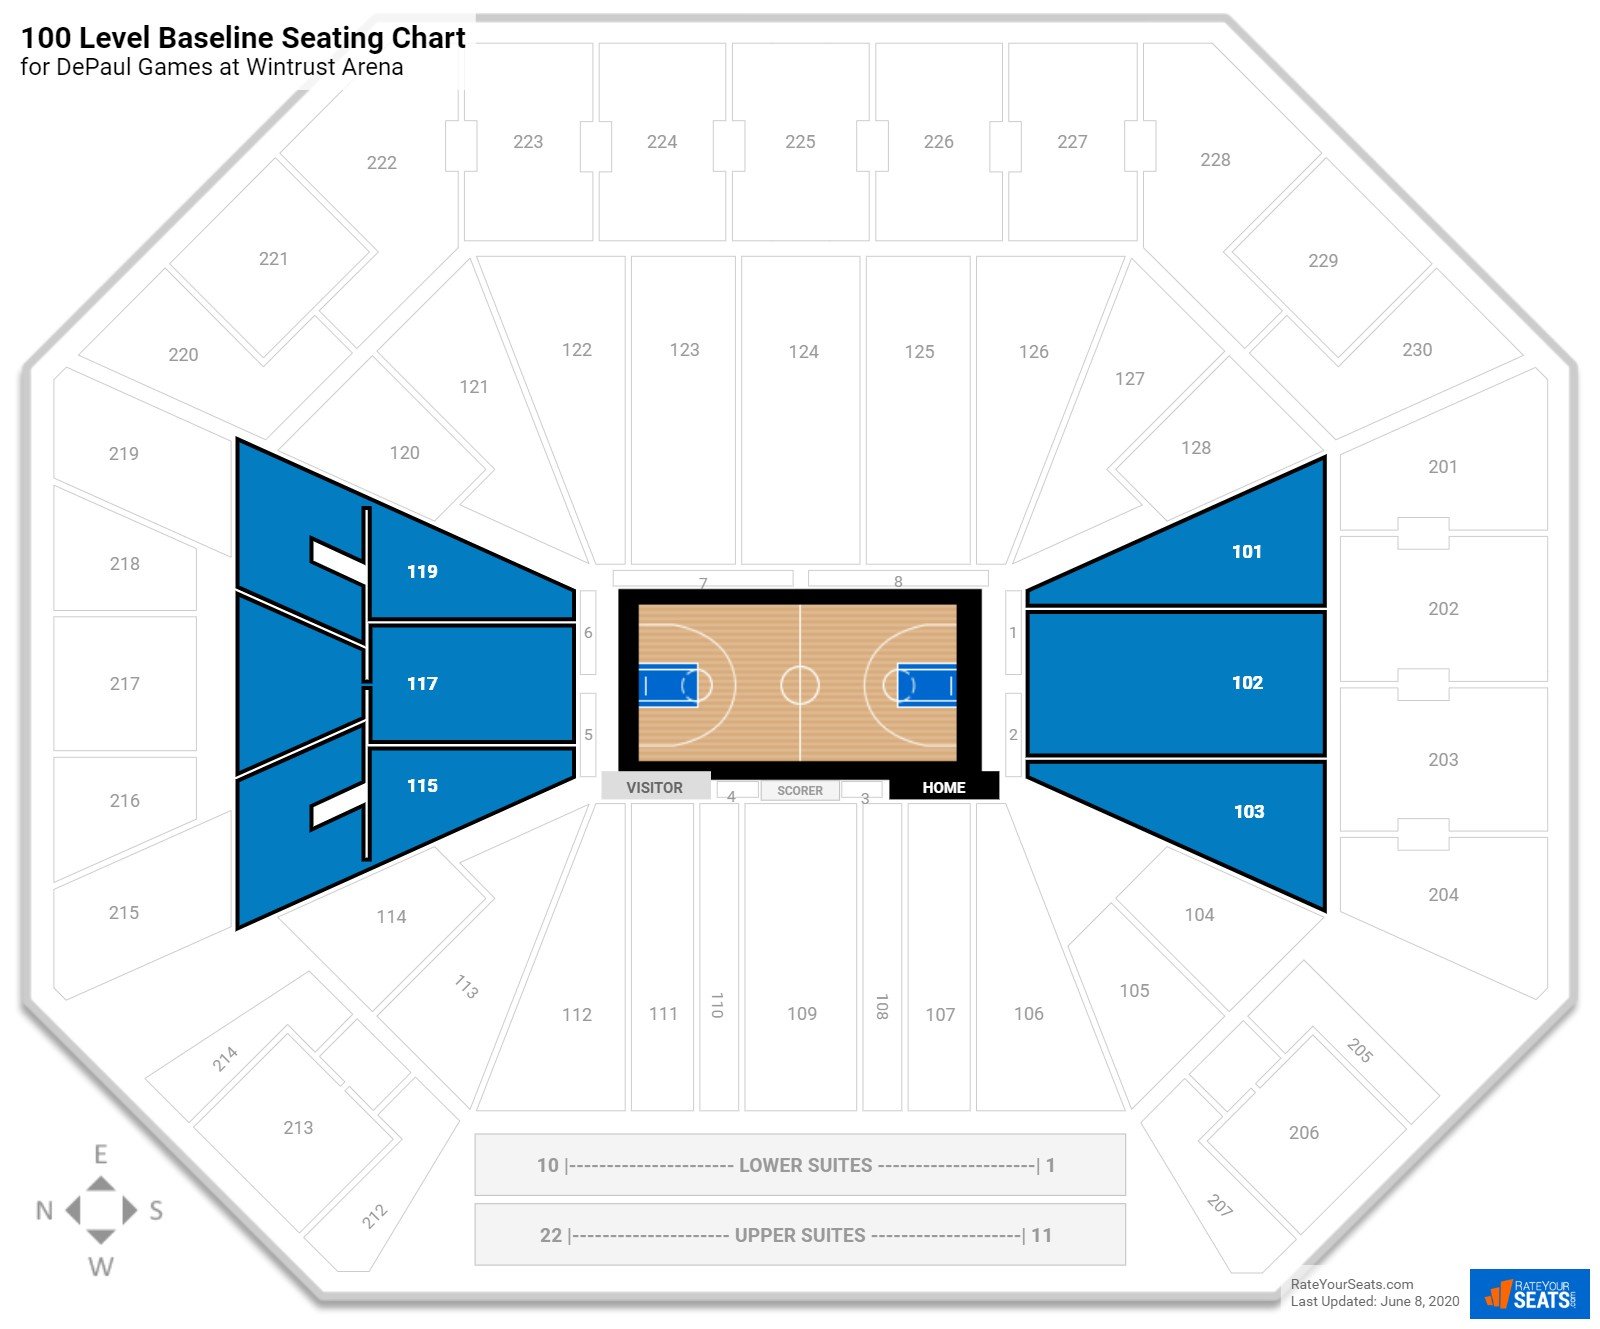 Wintrust Arena (DePaul) Seating Guide - RateYourSeats.com